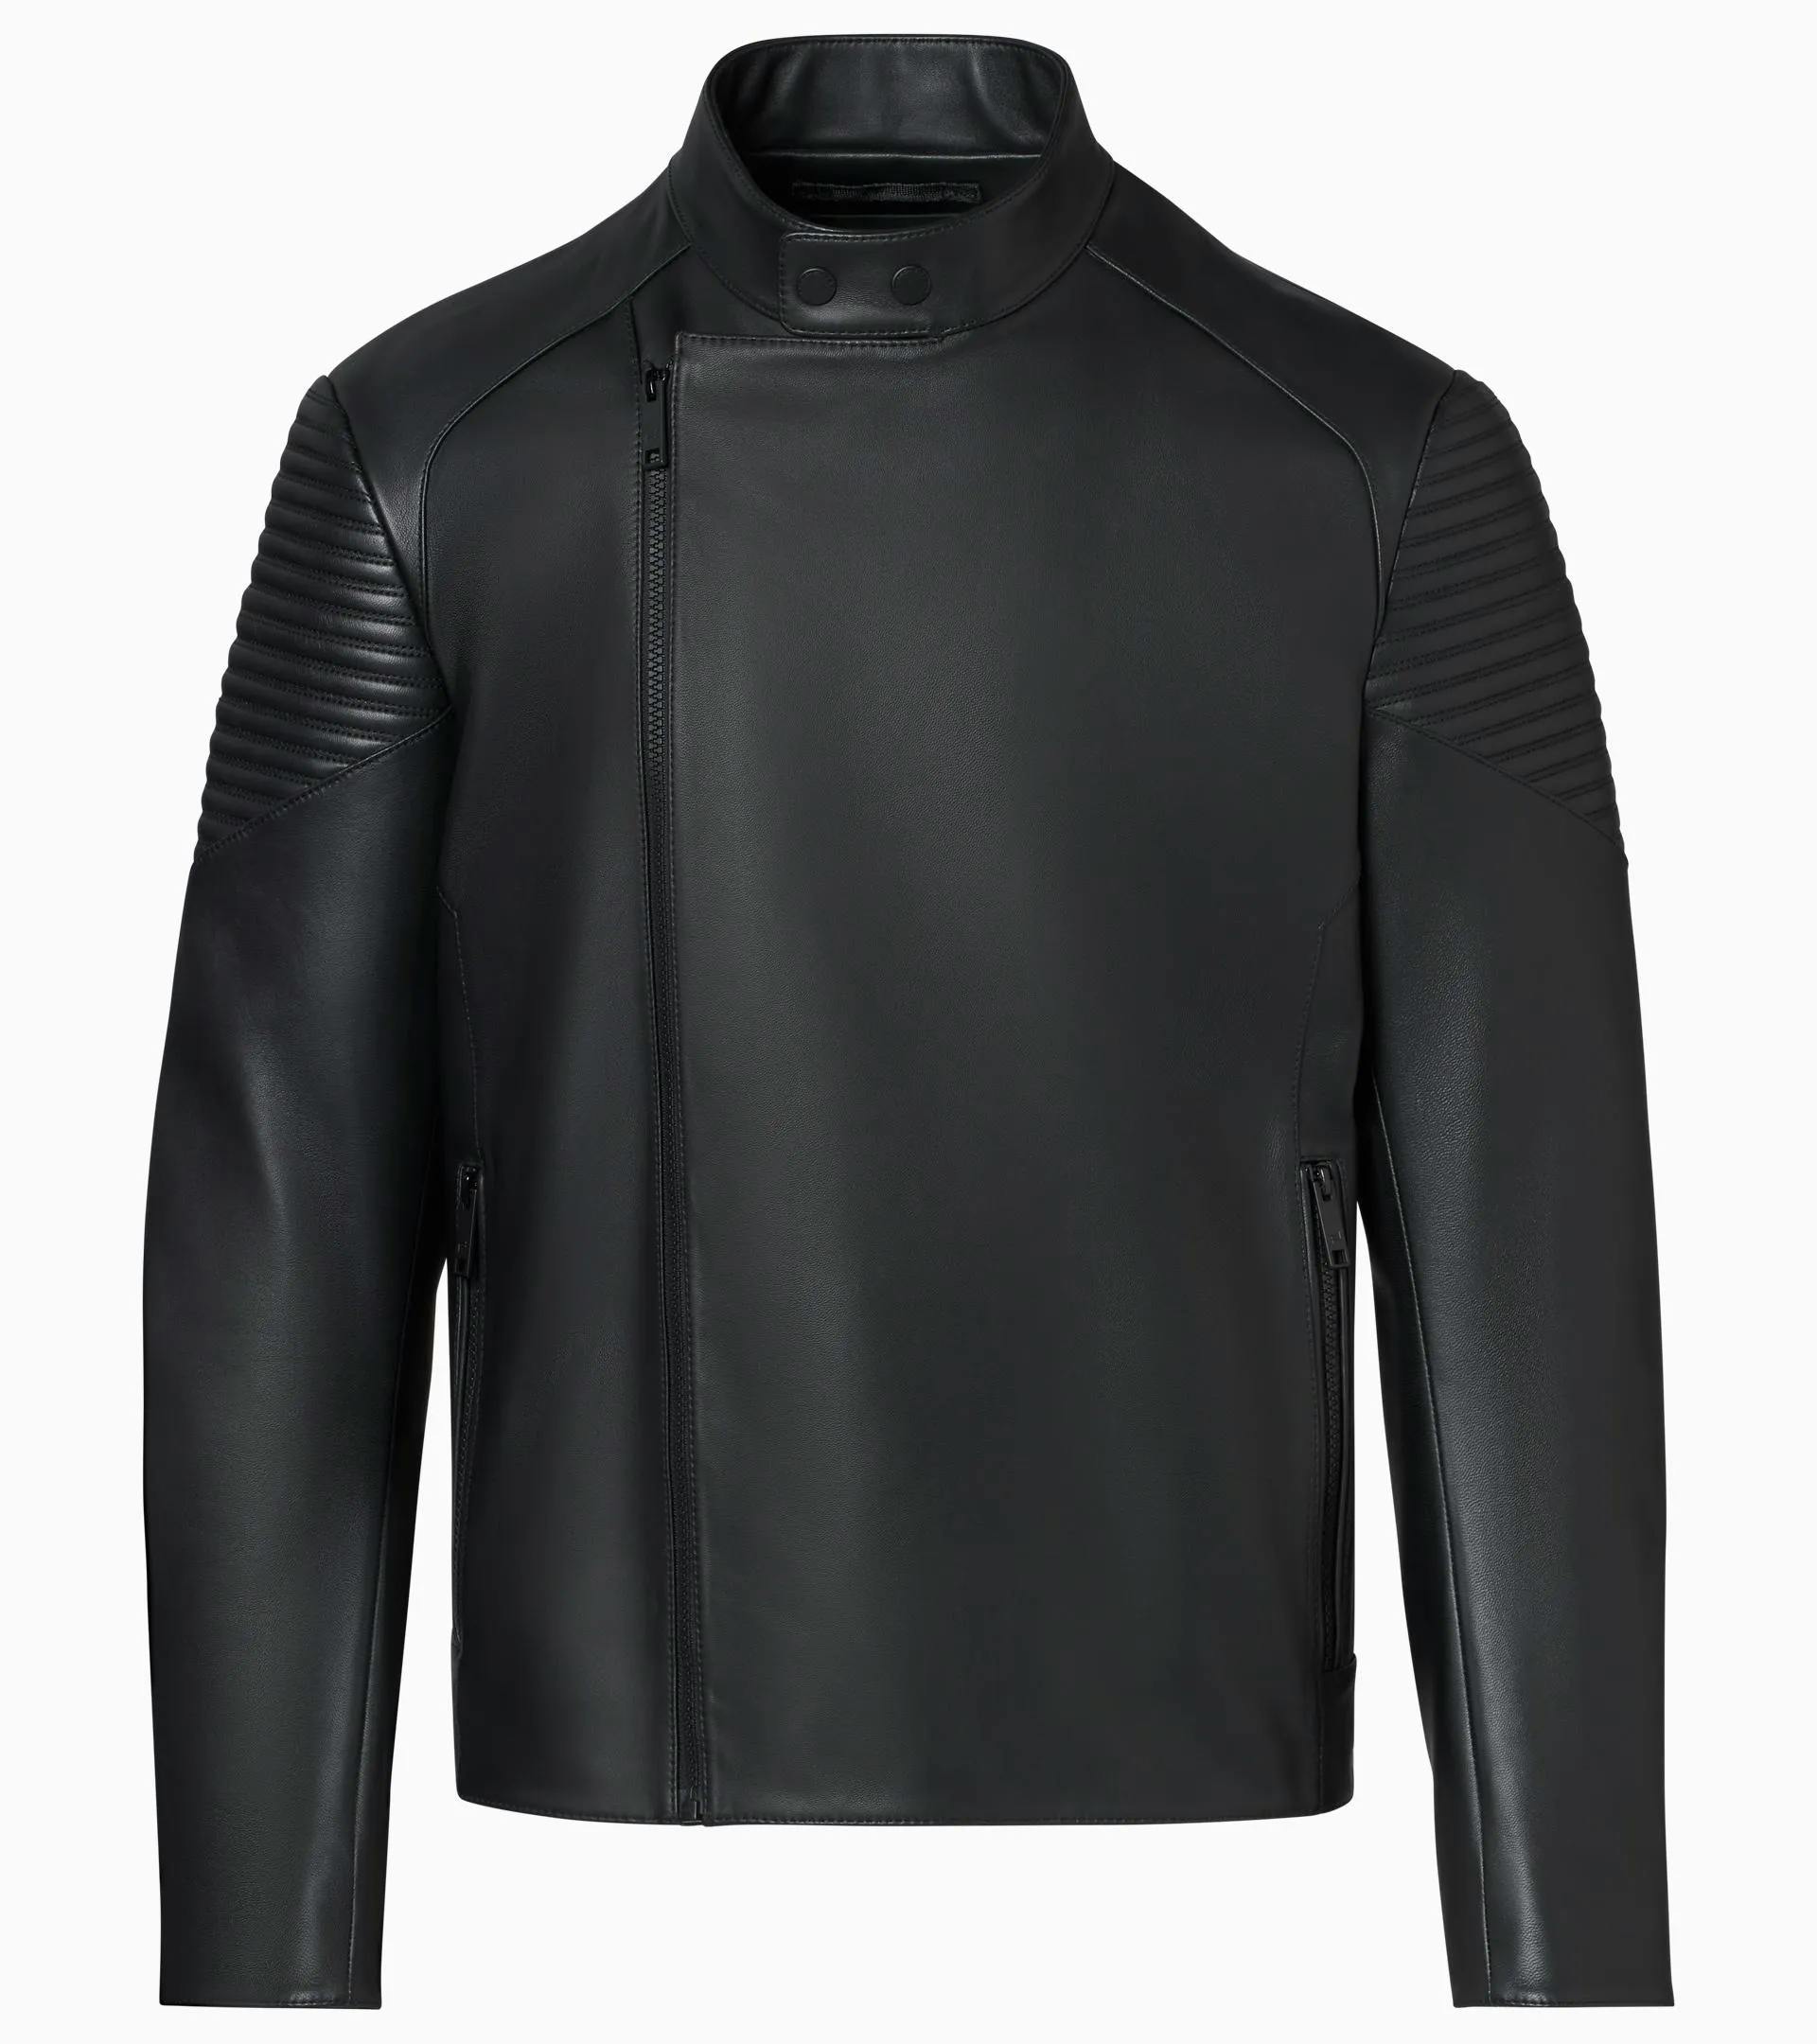 Men's Padded Shoulder Design Asymmetrical Black Leather Jacket